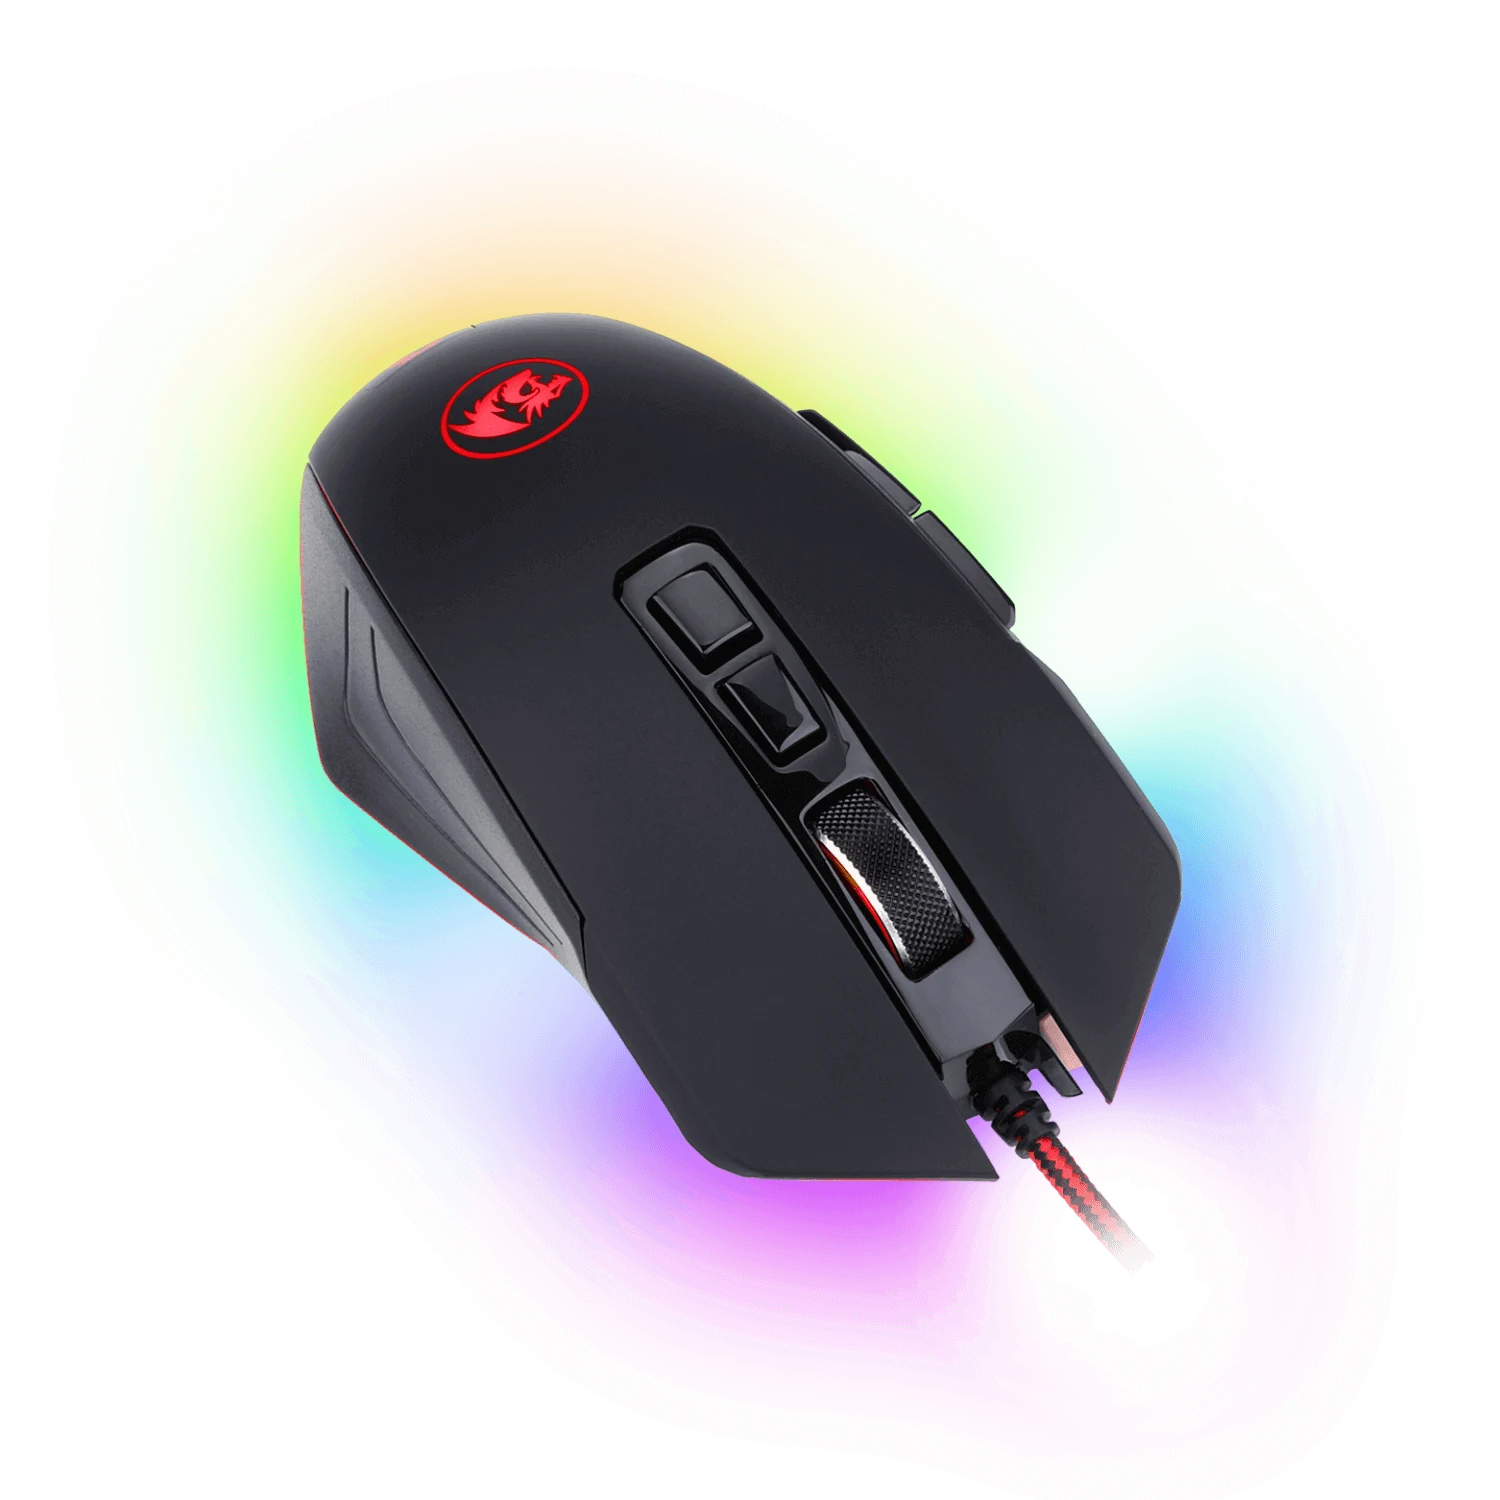 Mouse Gamer Redragon Dagger 2 - Preto (M715RGB-1)